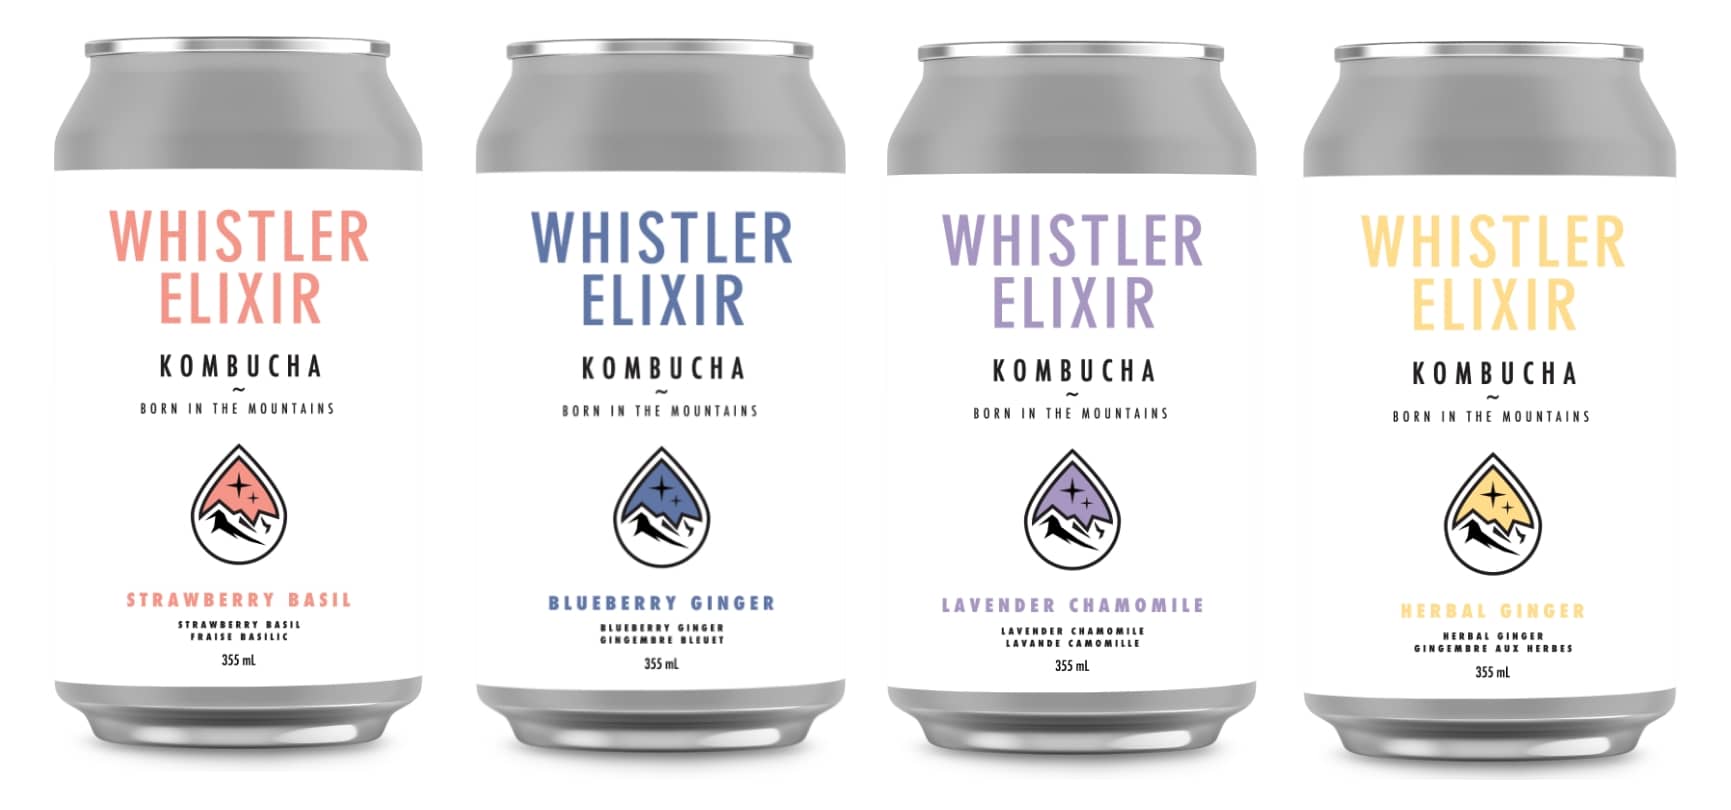 whistler_elixir_kombucha